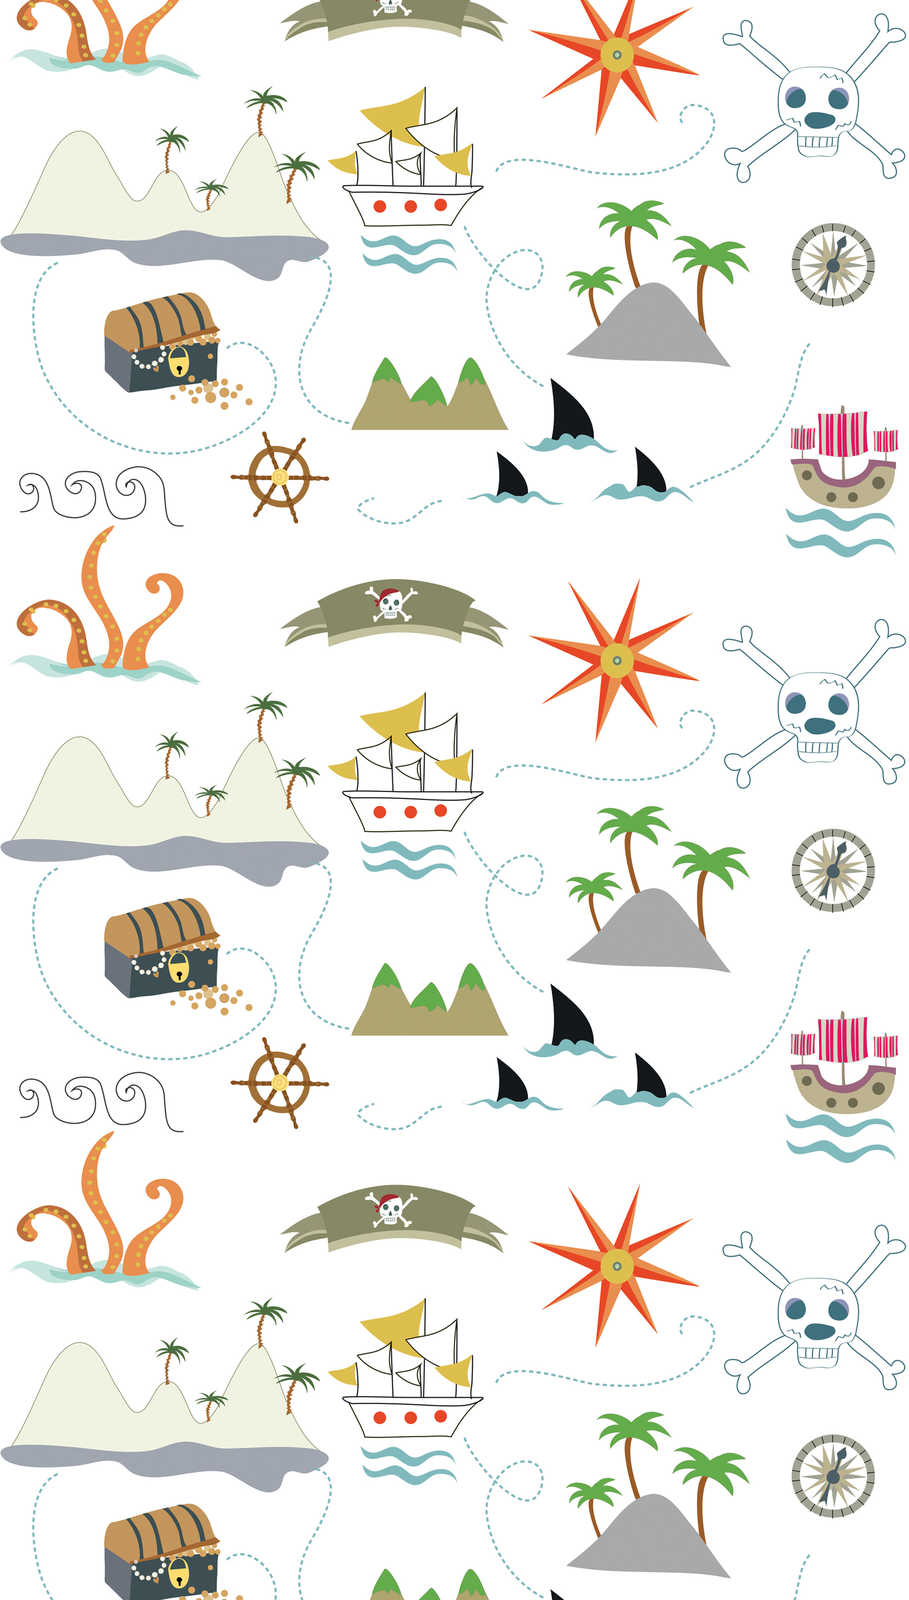             Children's non-woven wallpaper with pirate symbols - colourful, cream, grey
        